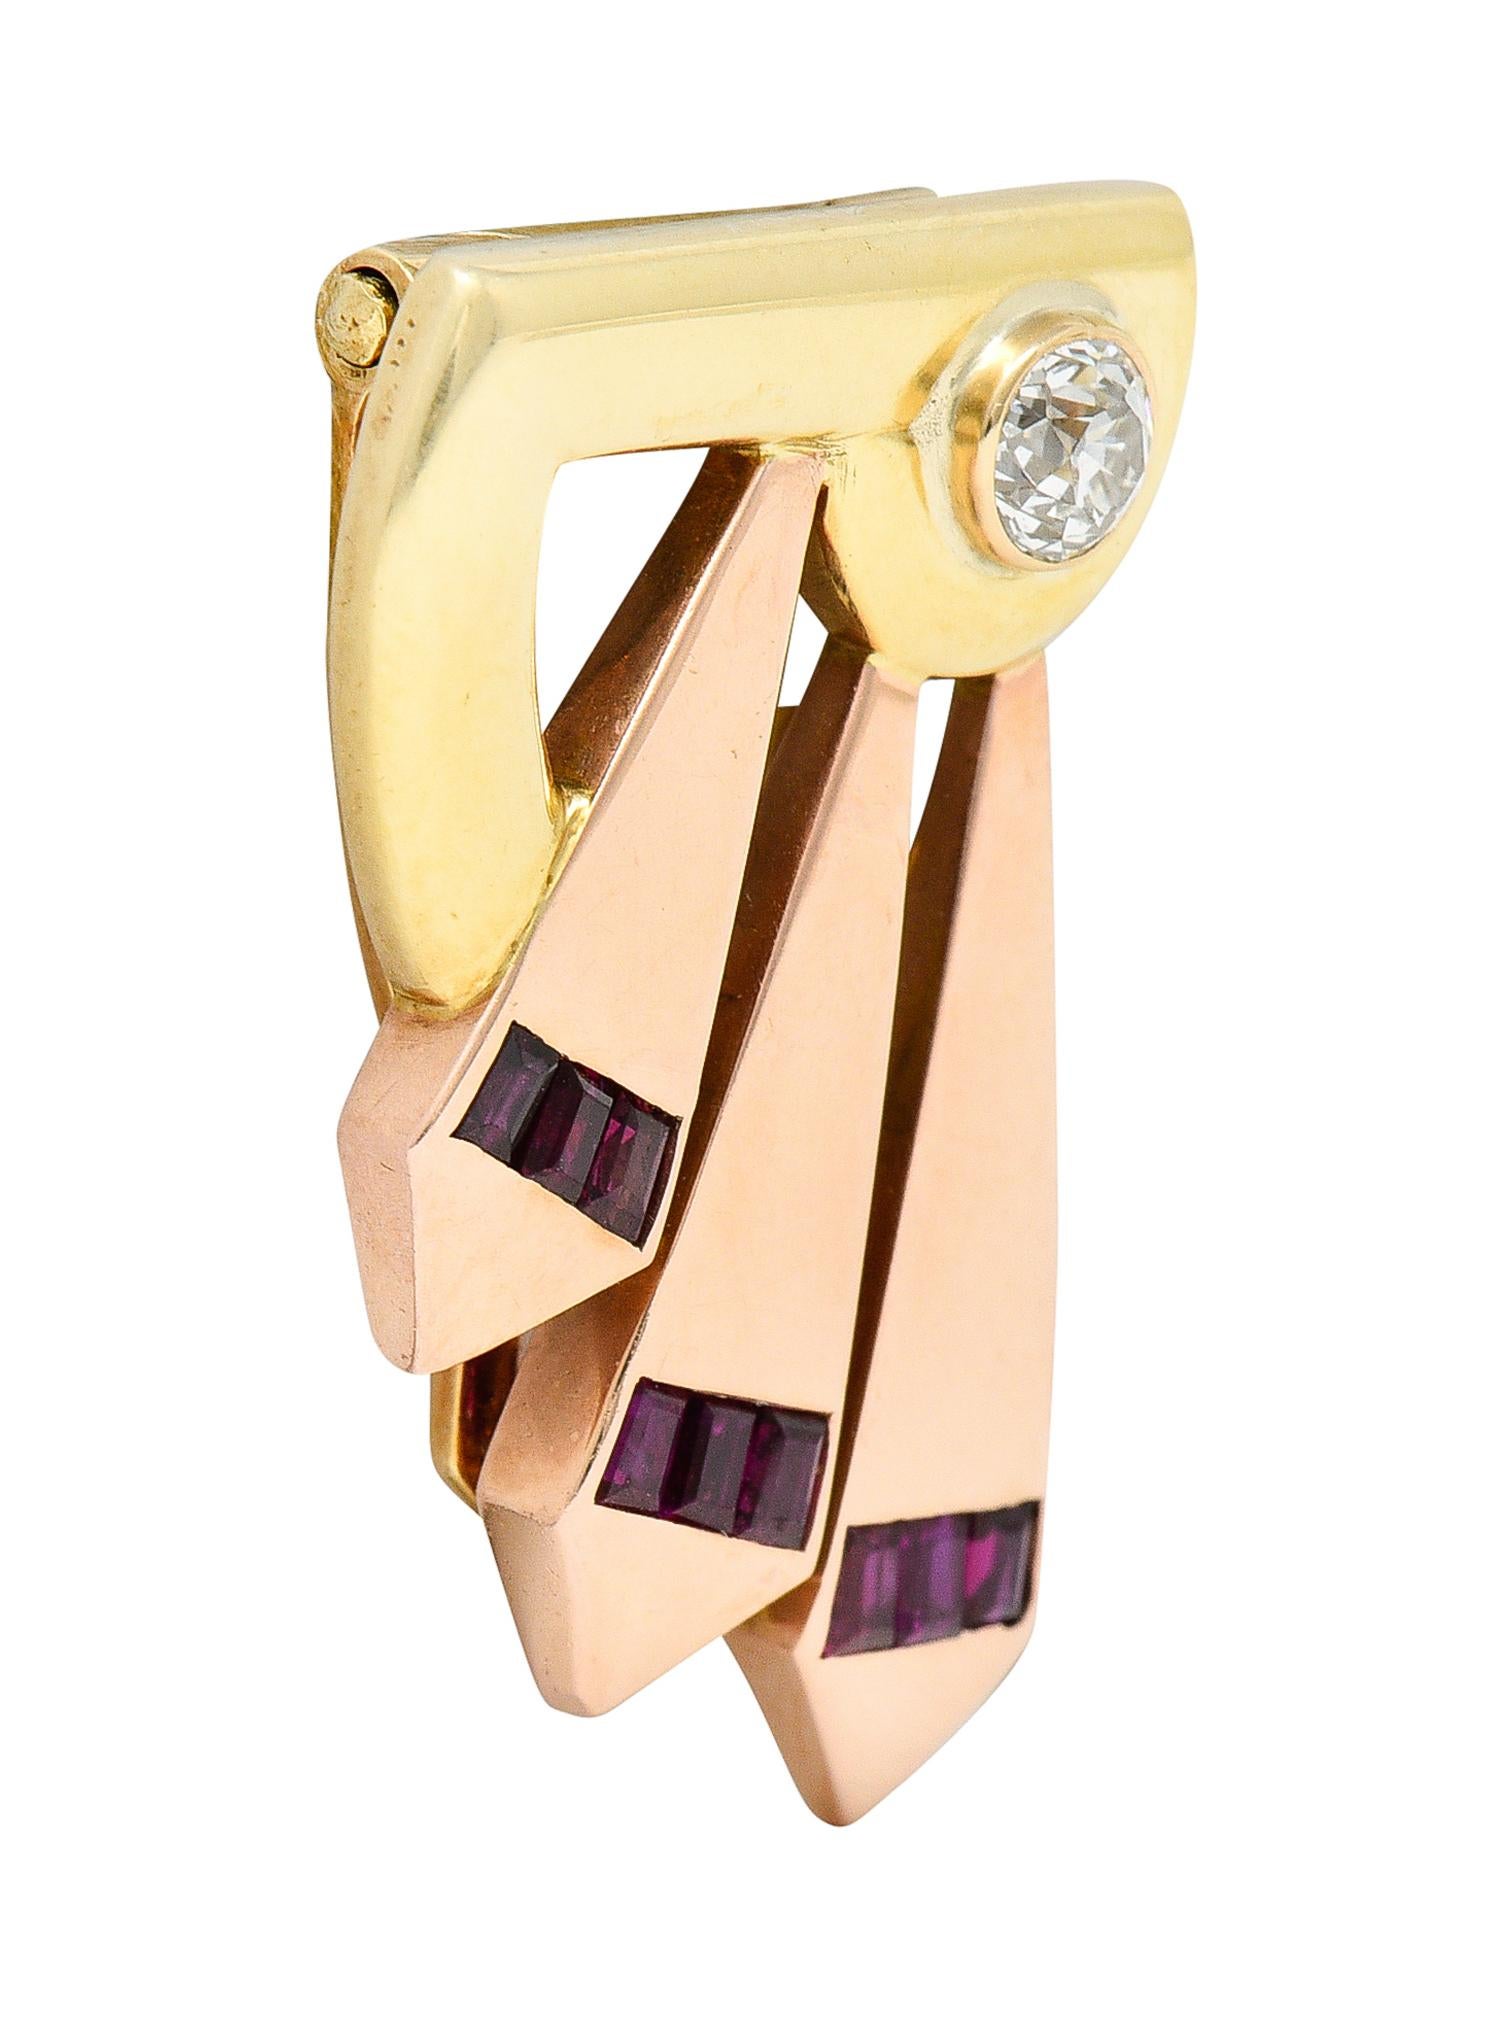 La broche de style clip est conçue comme une forme en or jaune avec des extensions en or rose en éventail

Avec un diamant taille ancienne serti dans la lunette pesant environ 0,40 carat - couleur I/J et pureté VS

Avec des rubis de taille